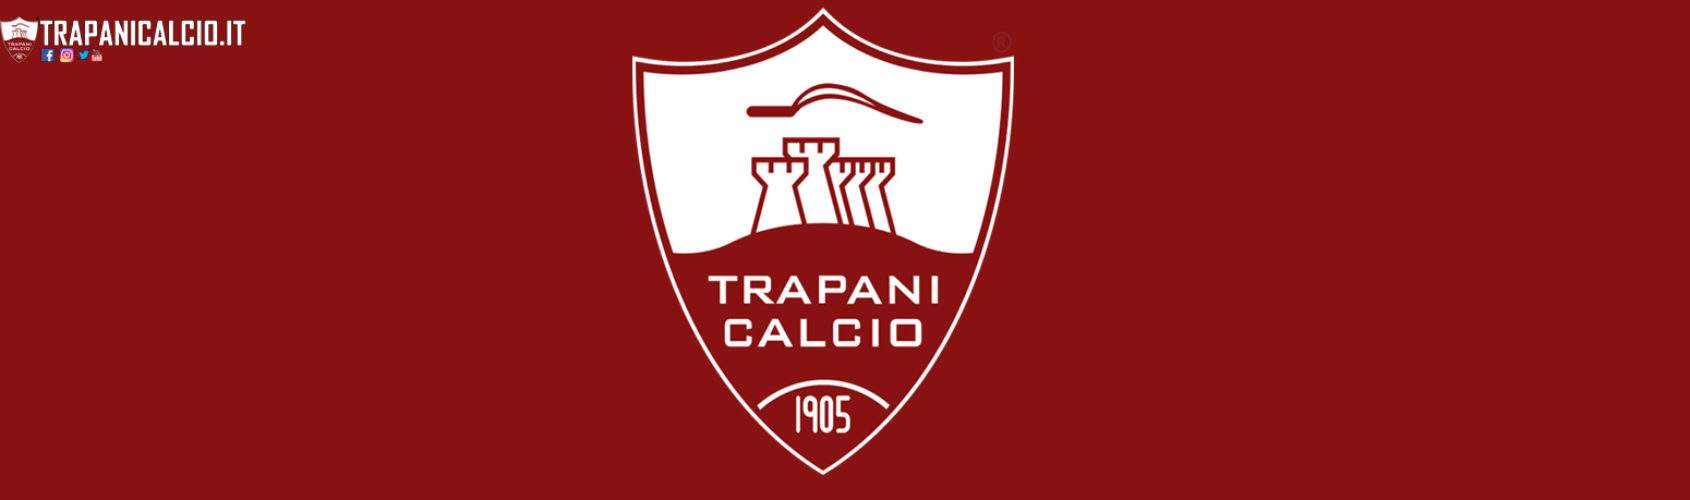 Stemma Trapani Calcio